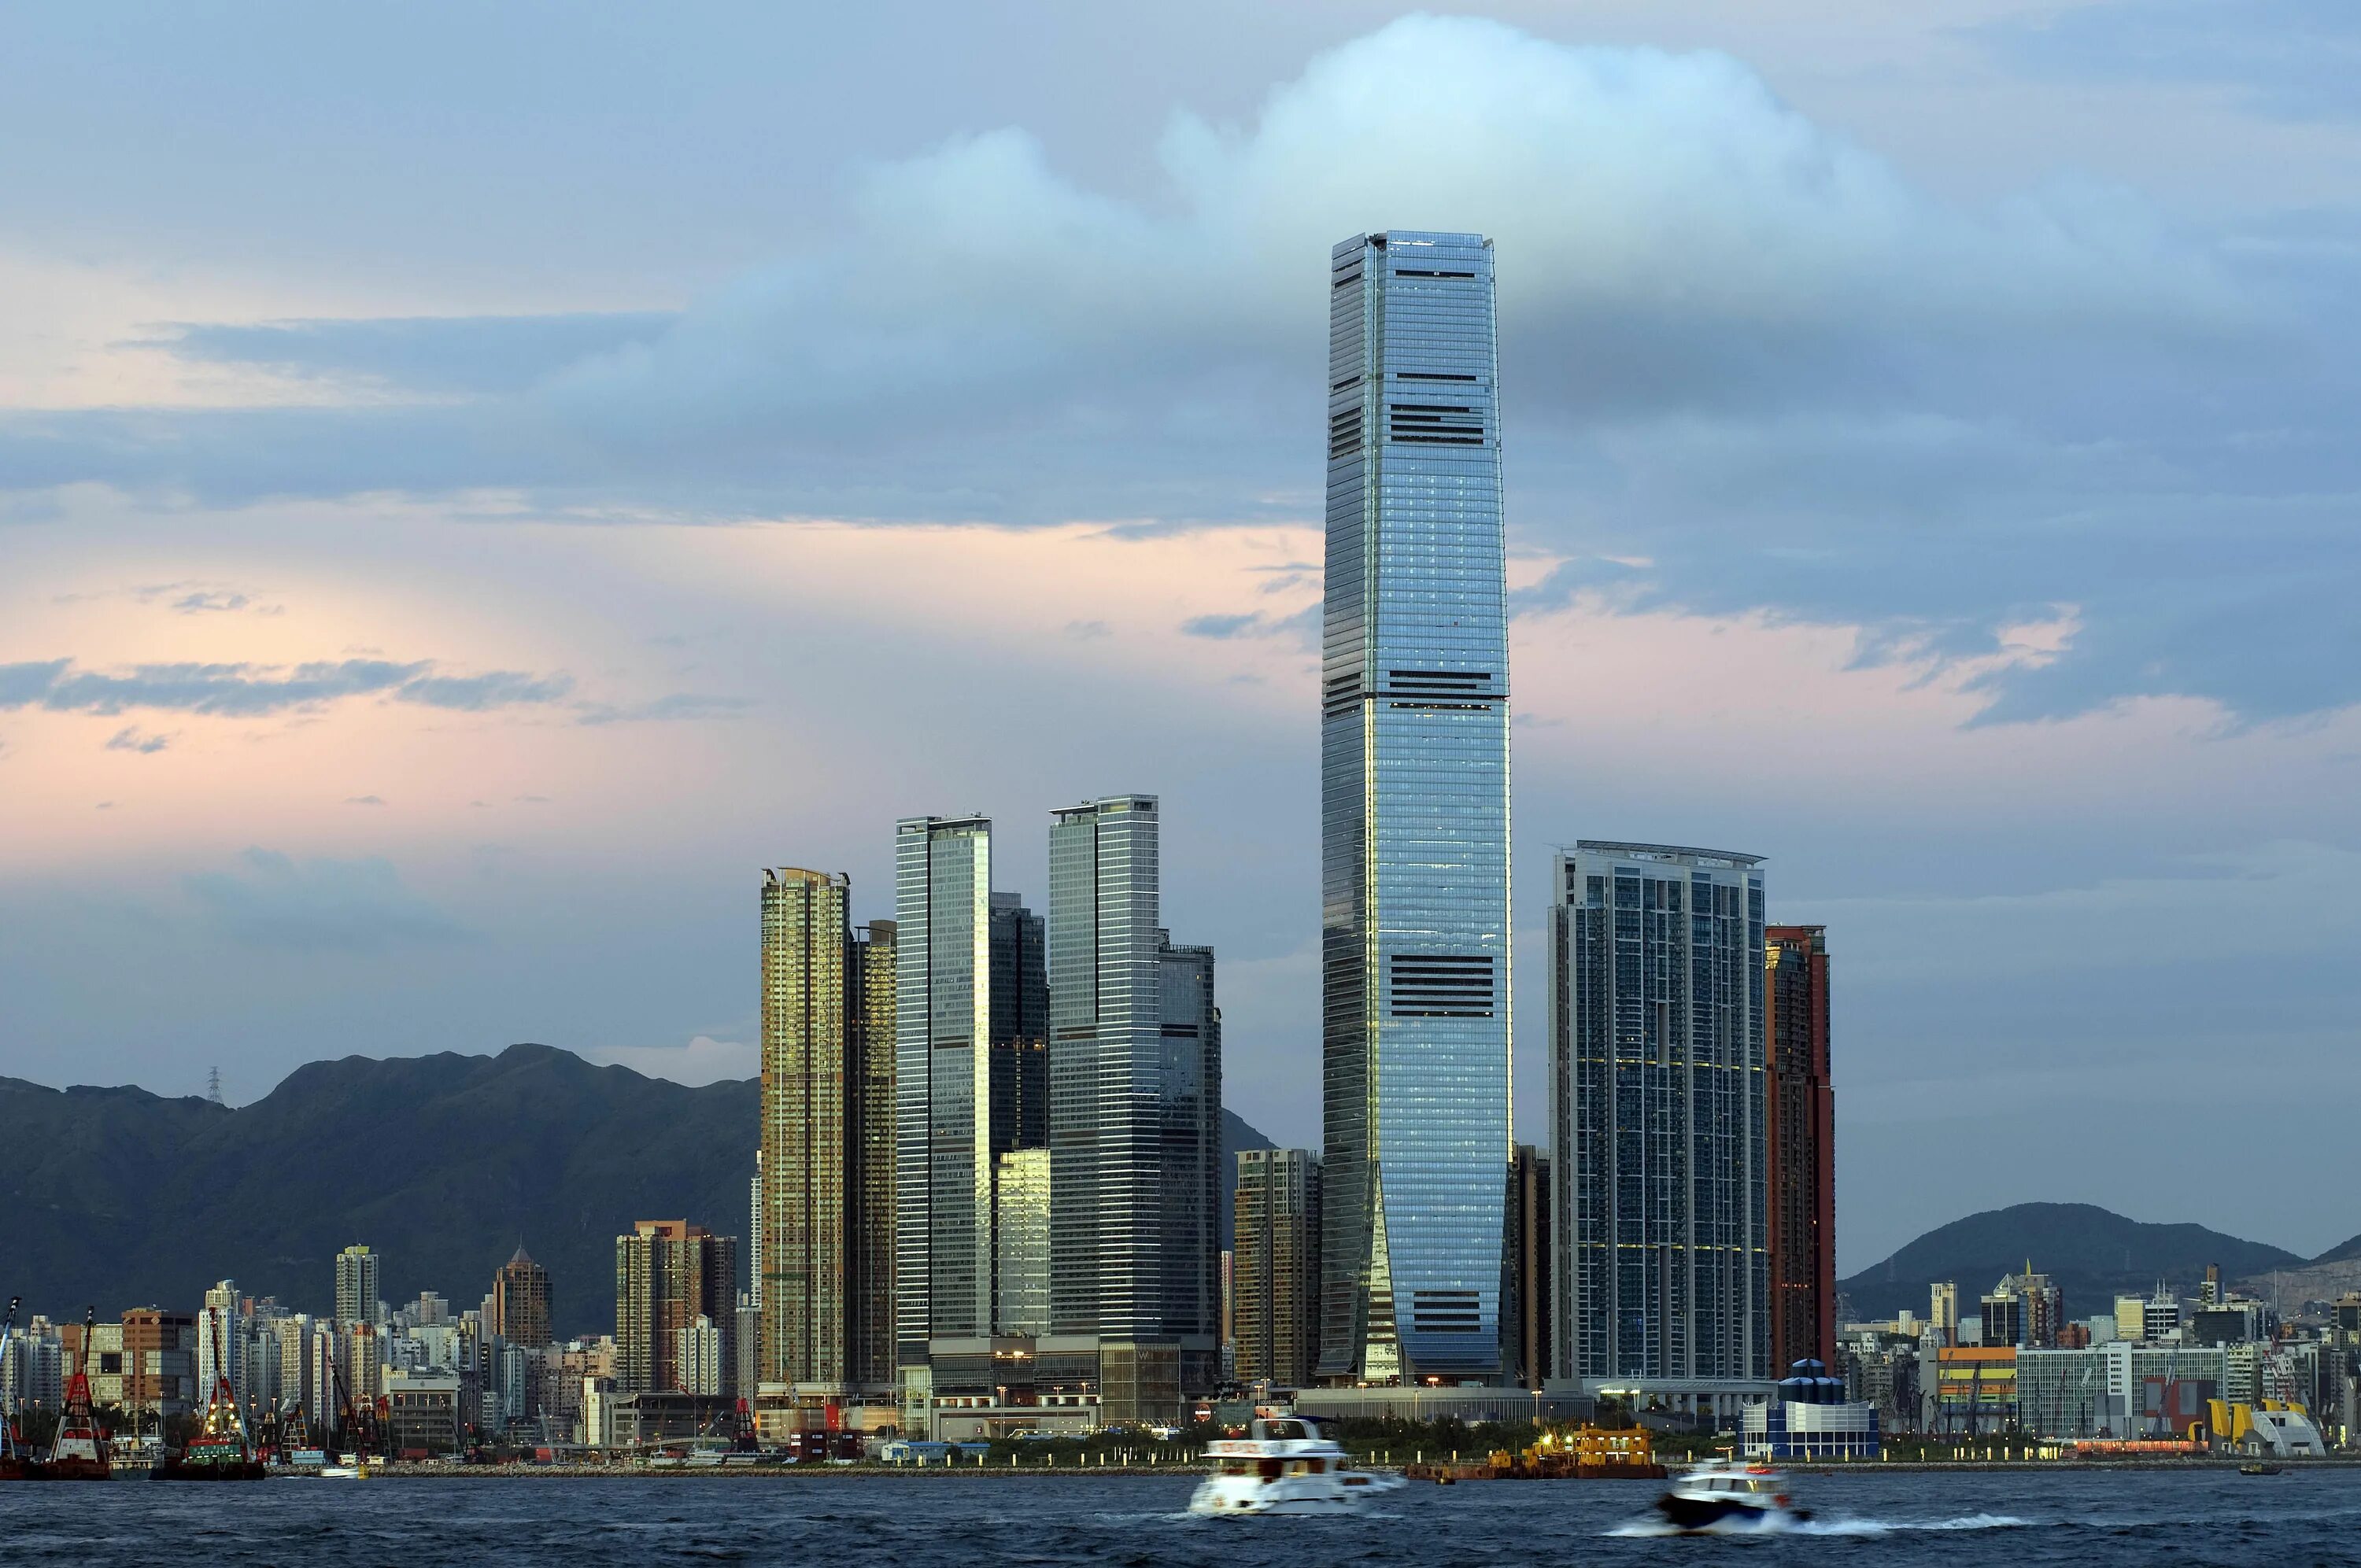 Международный коммерческий центр (International Commerce Centre) Гонконг. Международный финансовый центр Гонконга. Небоскреб Гонконга скайскрепер. Башня ICC Гонконг.